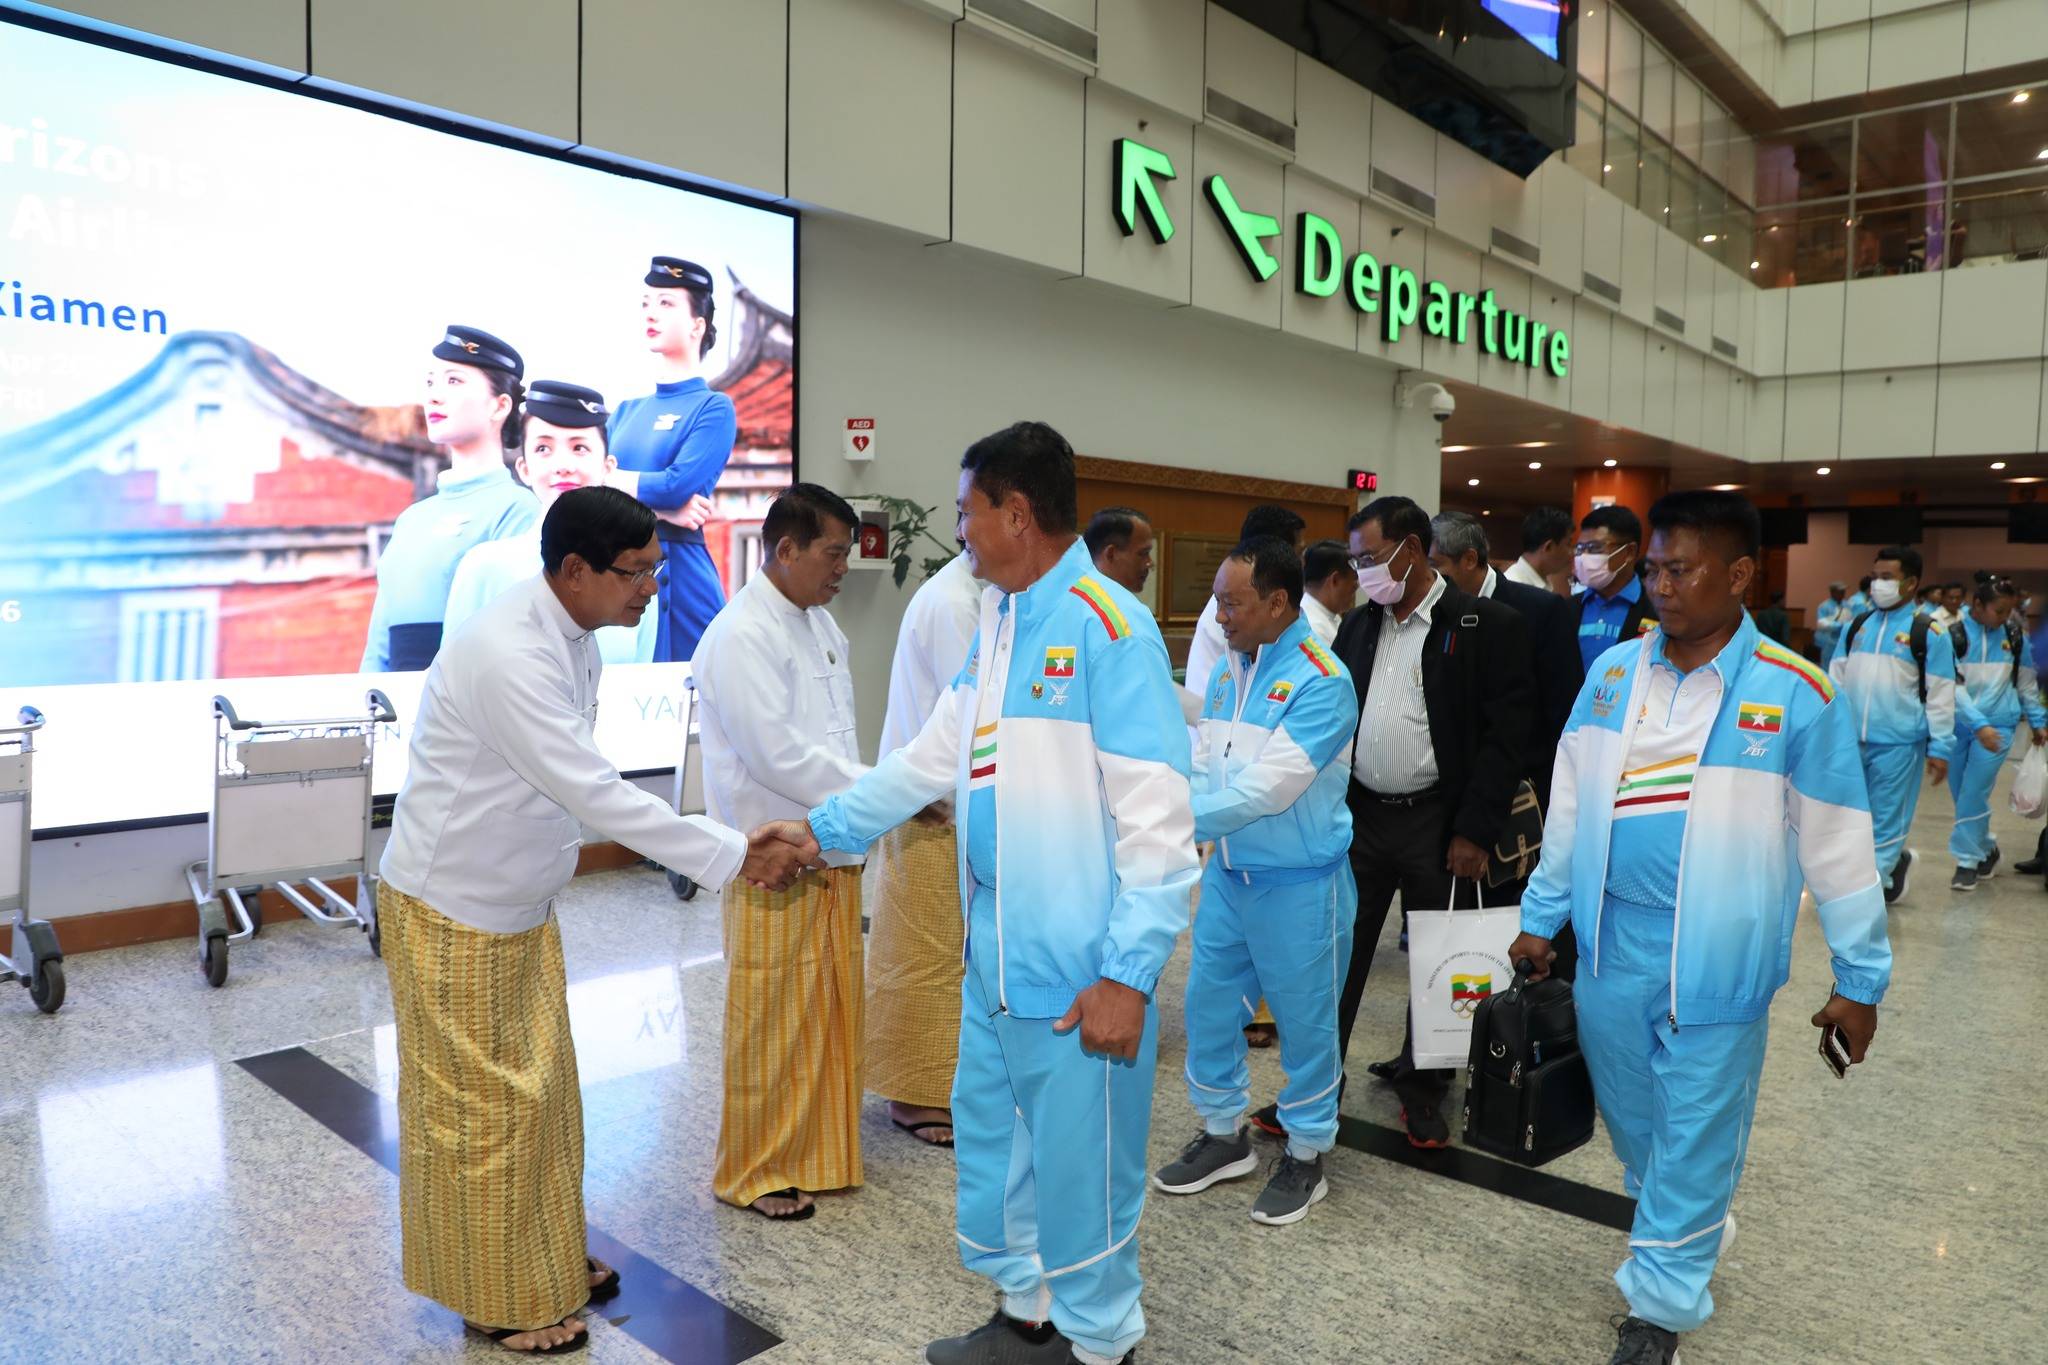 ပြည်ထောင်စုဝန်ကြီး ဦးမင်းသိန်းဇံနှင့် မြန်မာအားကစားသမားအဖွဲ (၃၂)ကြိမ်မြောက် အရှေ့တောင်အာရှ အားကစားပြိုင်ပွဲသို့တက်ရောက်ရန် ကမ္ဘောဒီးယားနိုင်ငံသို့ထွက်ခွာသည့်သတင်း